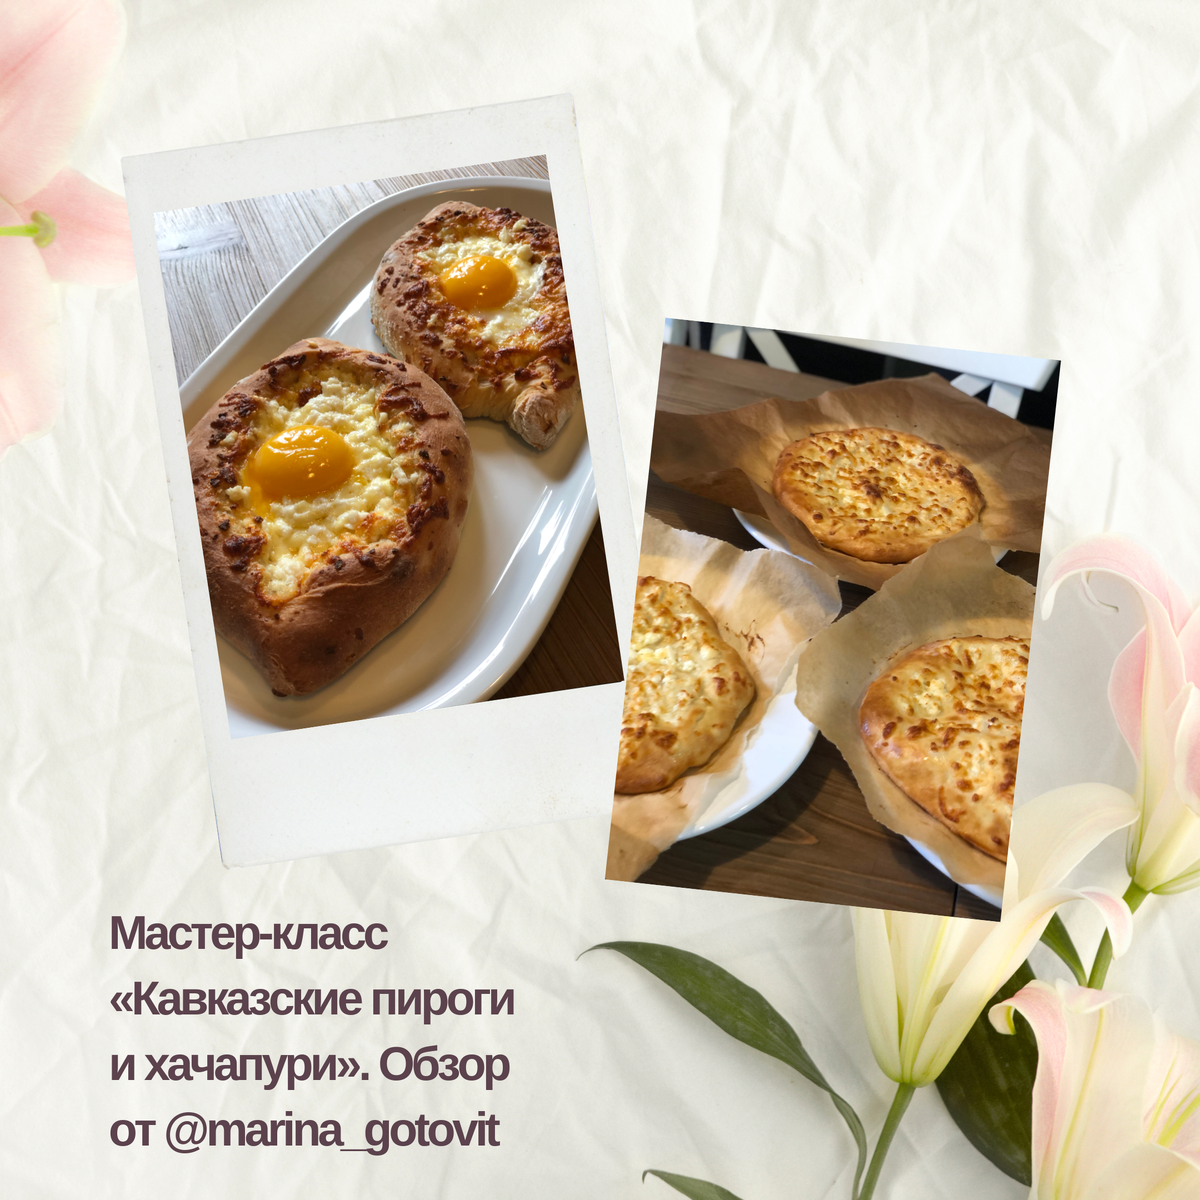 Кулинарные мастер классы по приготовлению еды в СПб